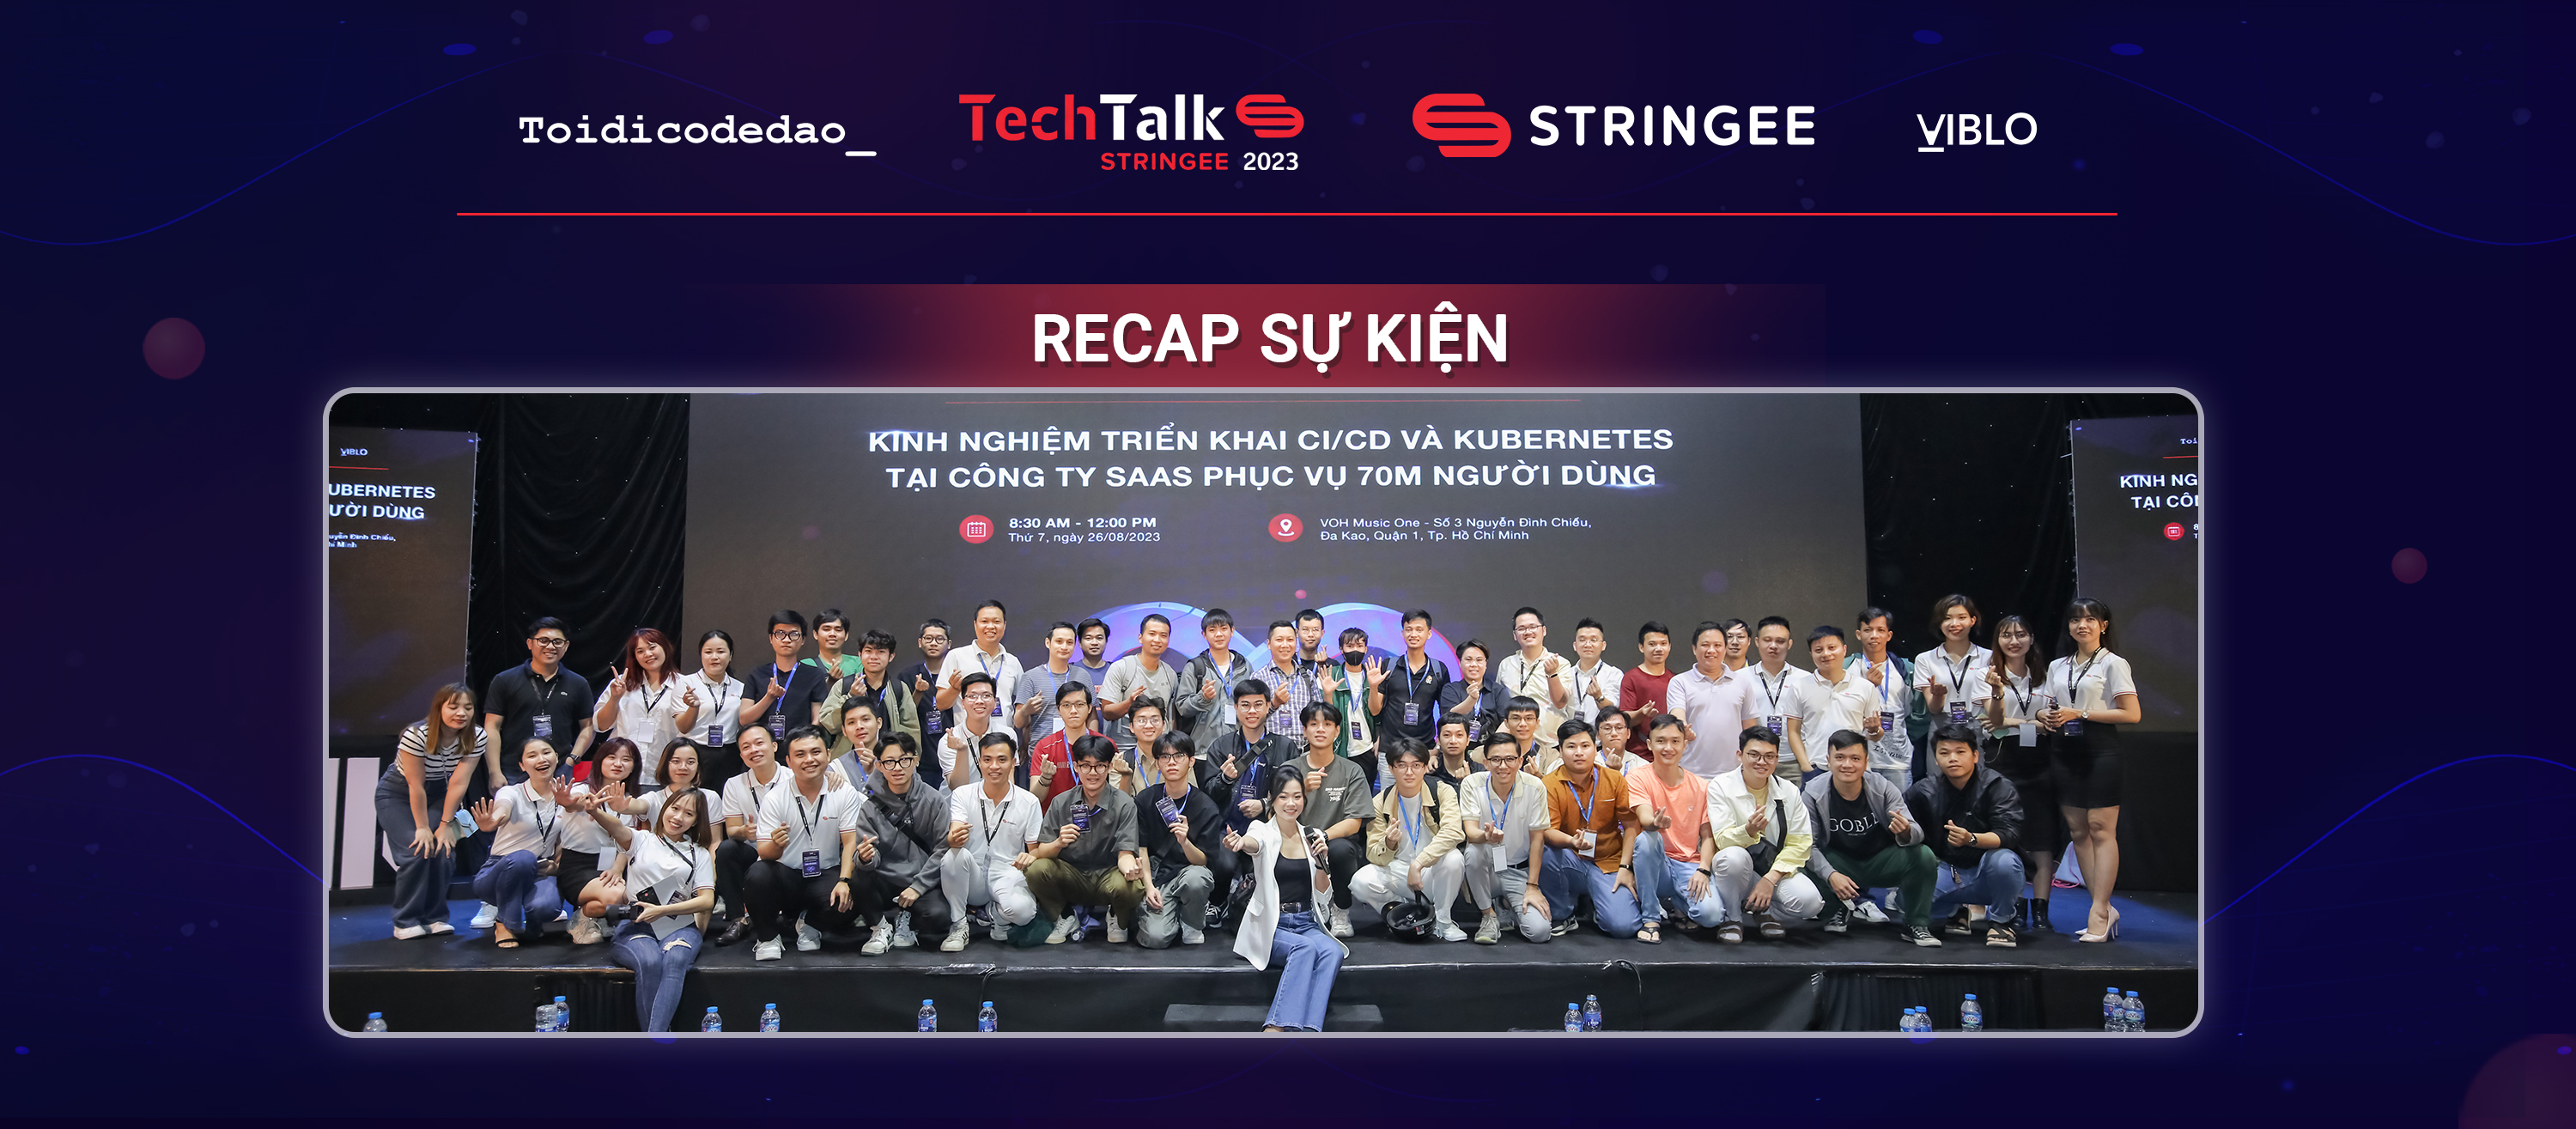 Tổng kết Stringee Tech Talk 2023: “Kinh nghiệm triển khai CI/CD và Kubernetes tại công ty SaaS phục vụ 70M người dùng”